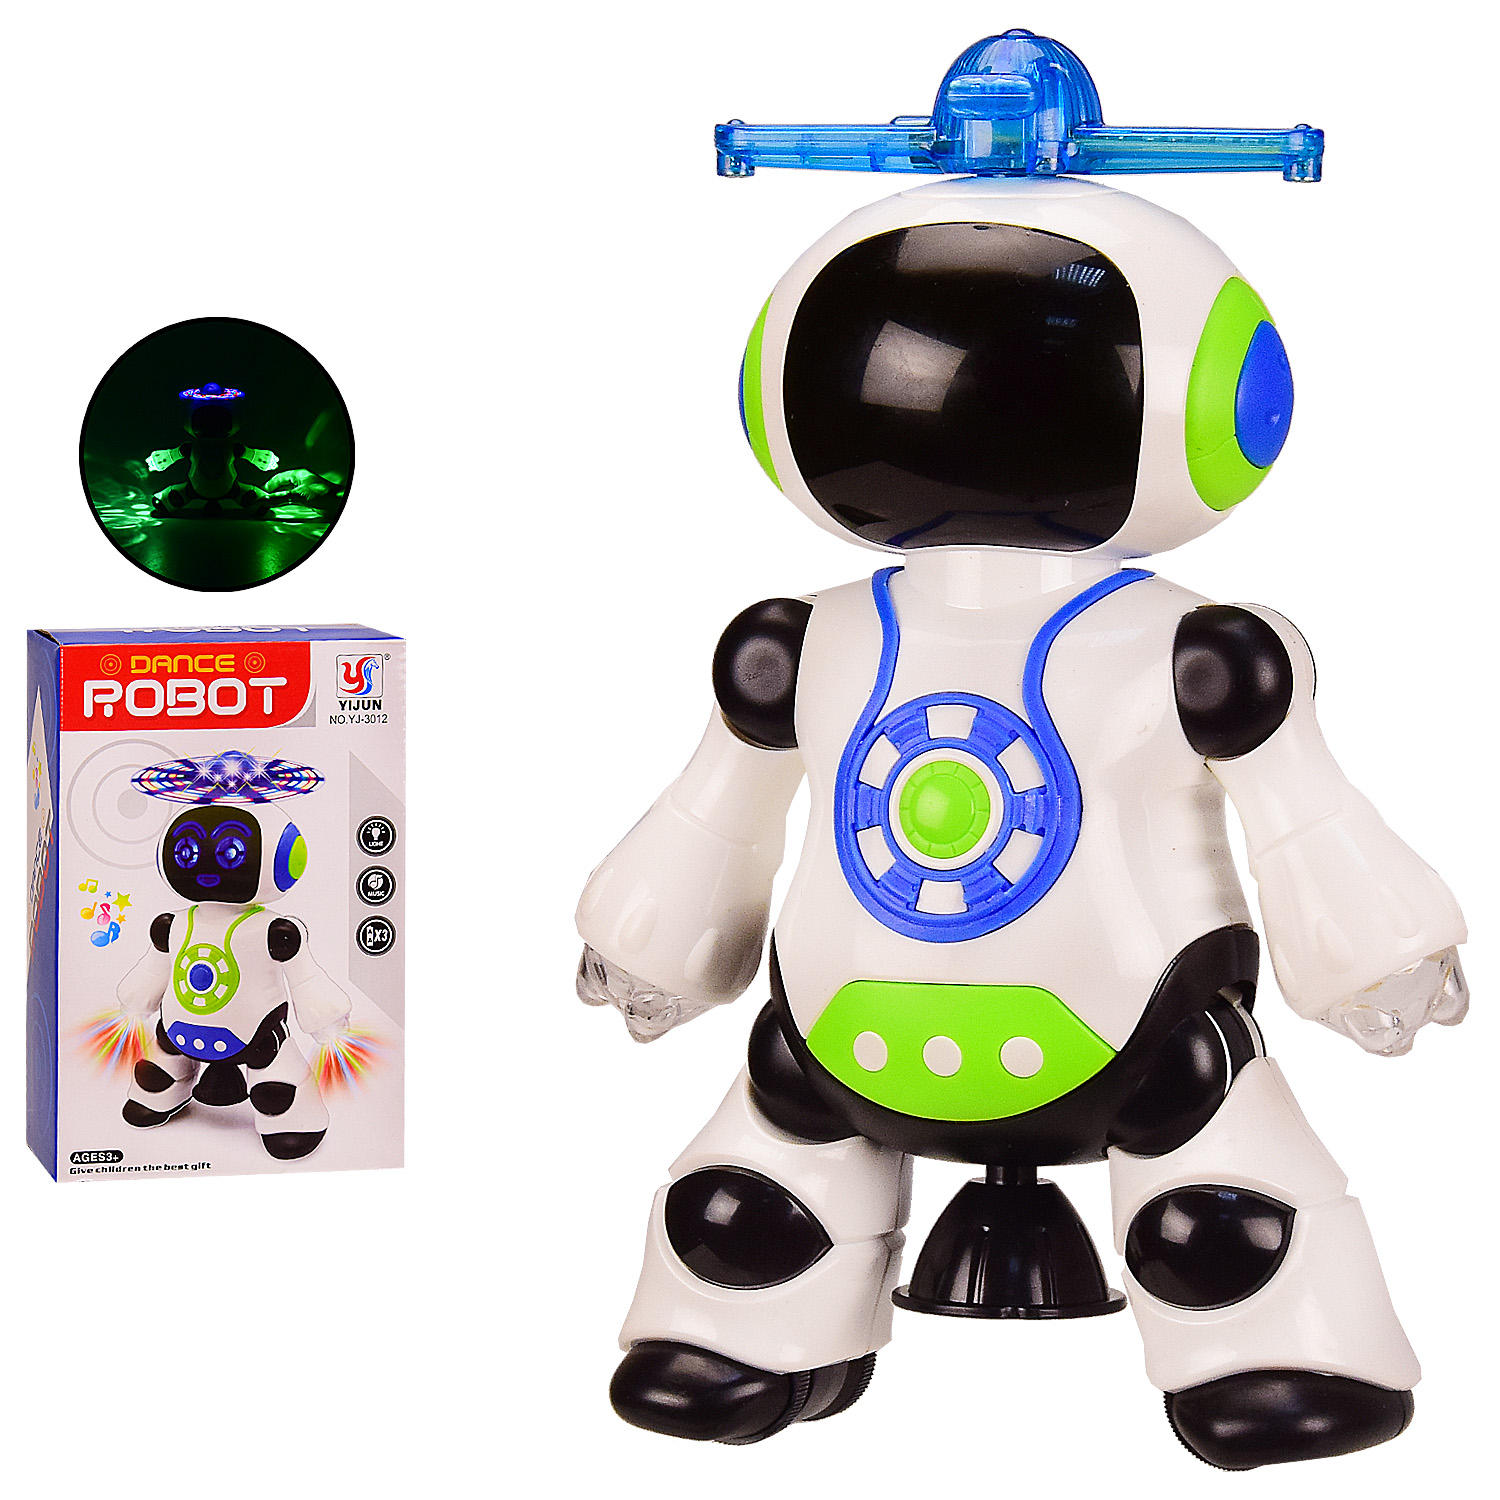 Іграшка робот 'Dancing Robot' танцює